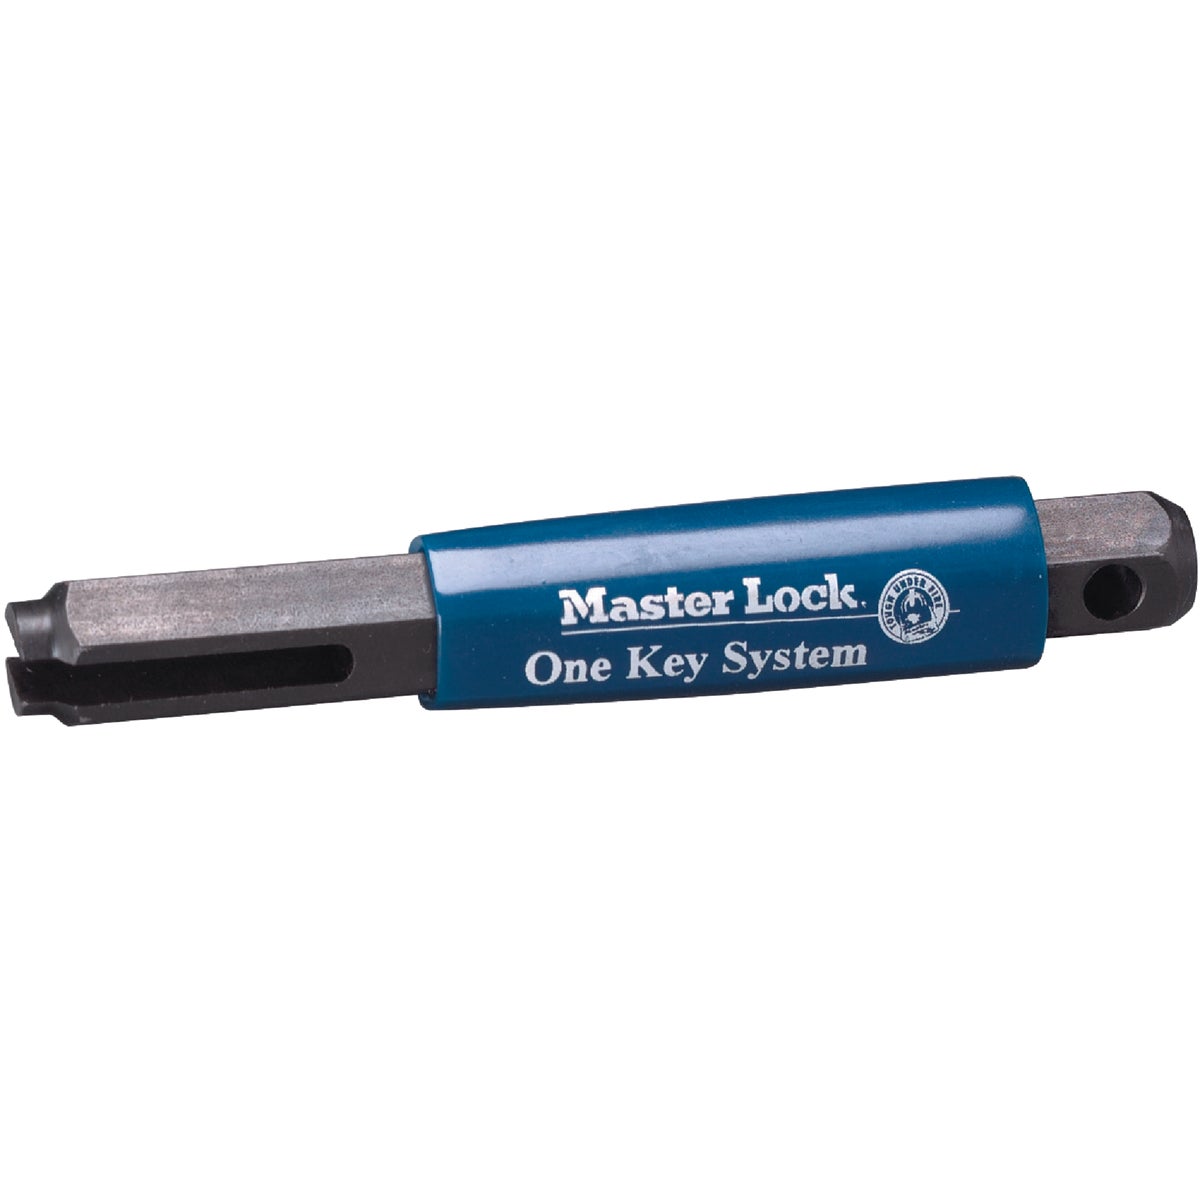 Item 238166, Handheld punch tool for keying universal pin padlocks.